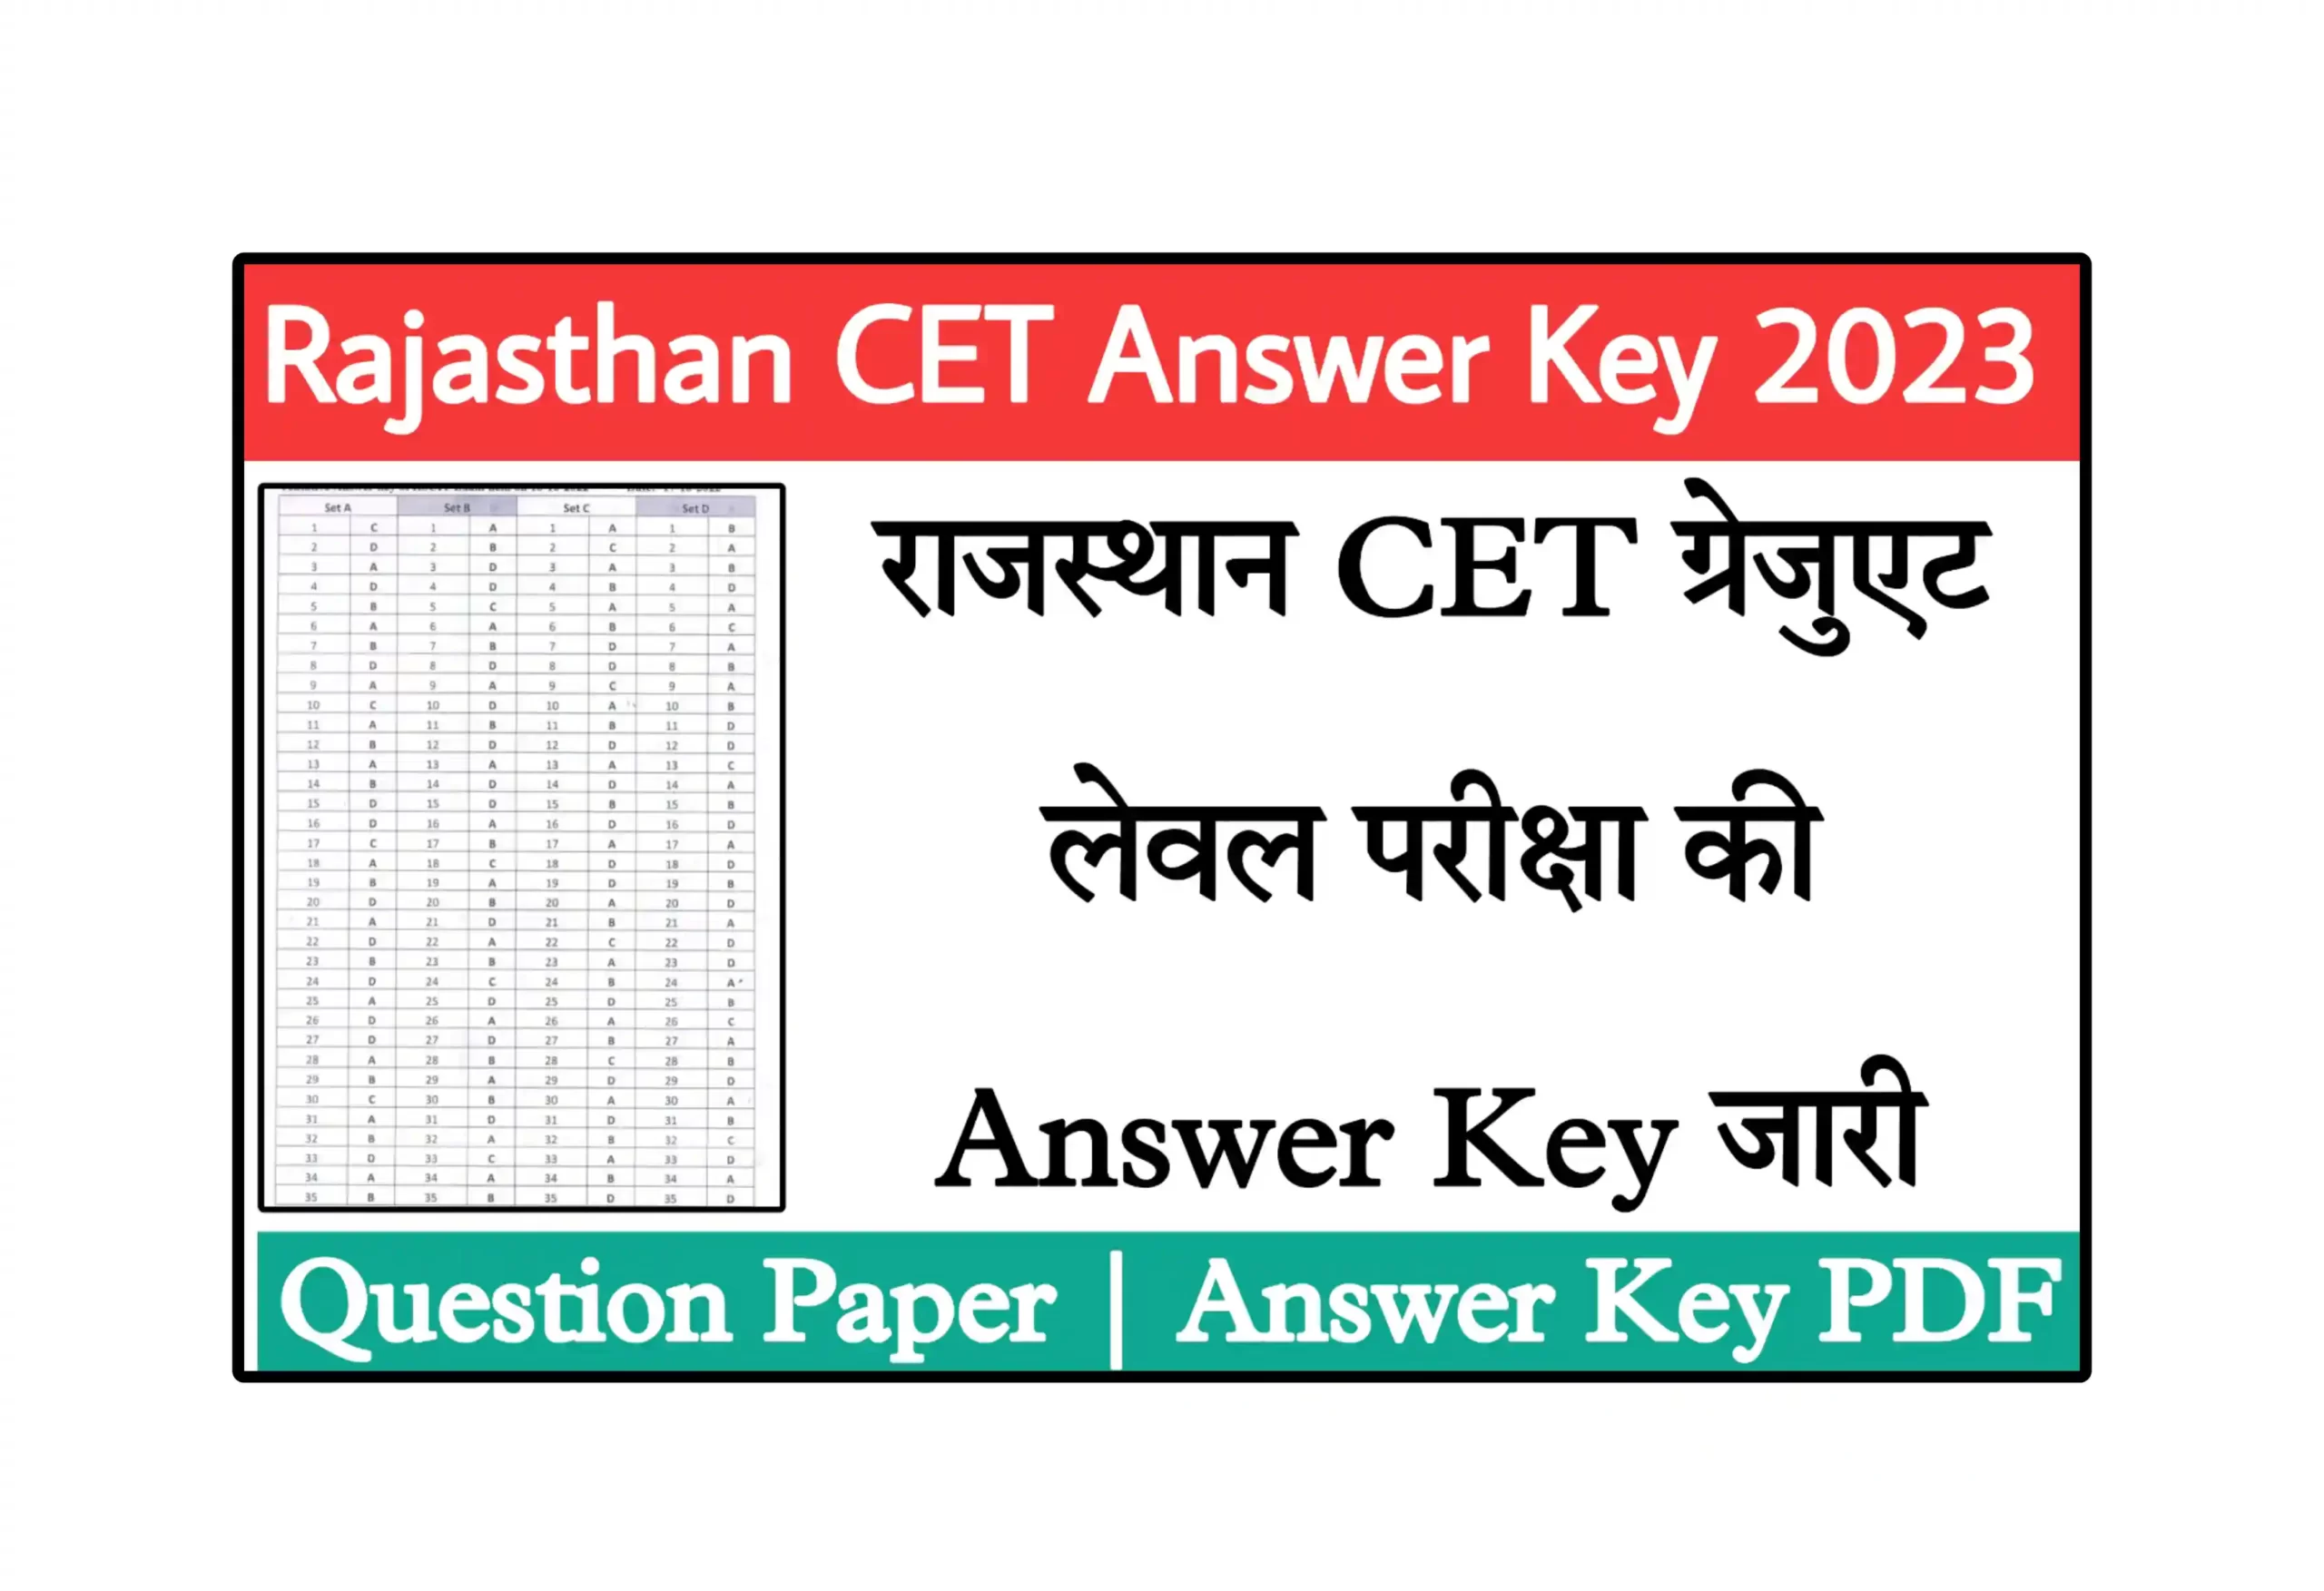 Rajasthan CET Answer Key 2023 PDF Download Link राजस्थान सीईटी Graduation Level की परीक्षा के प्रश्न पत्र और आंसर की यहां से डाउनलोड